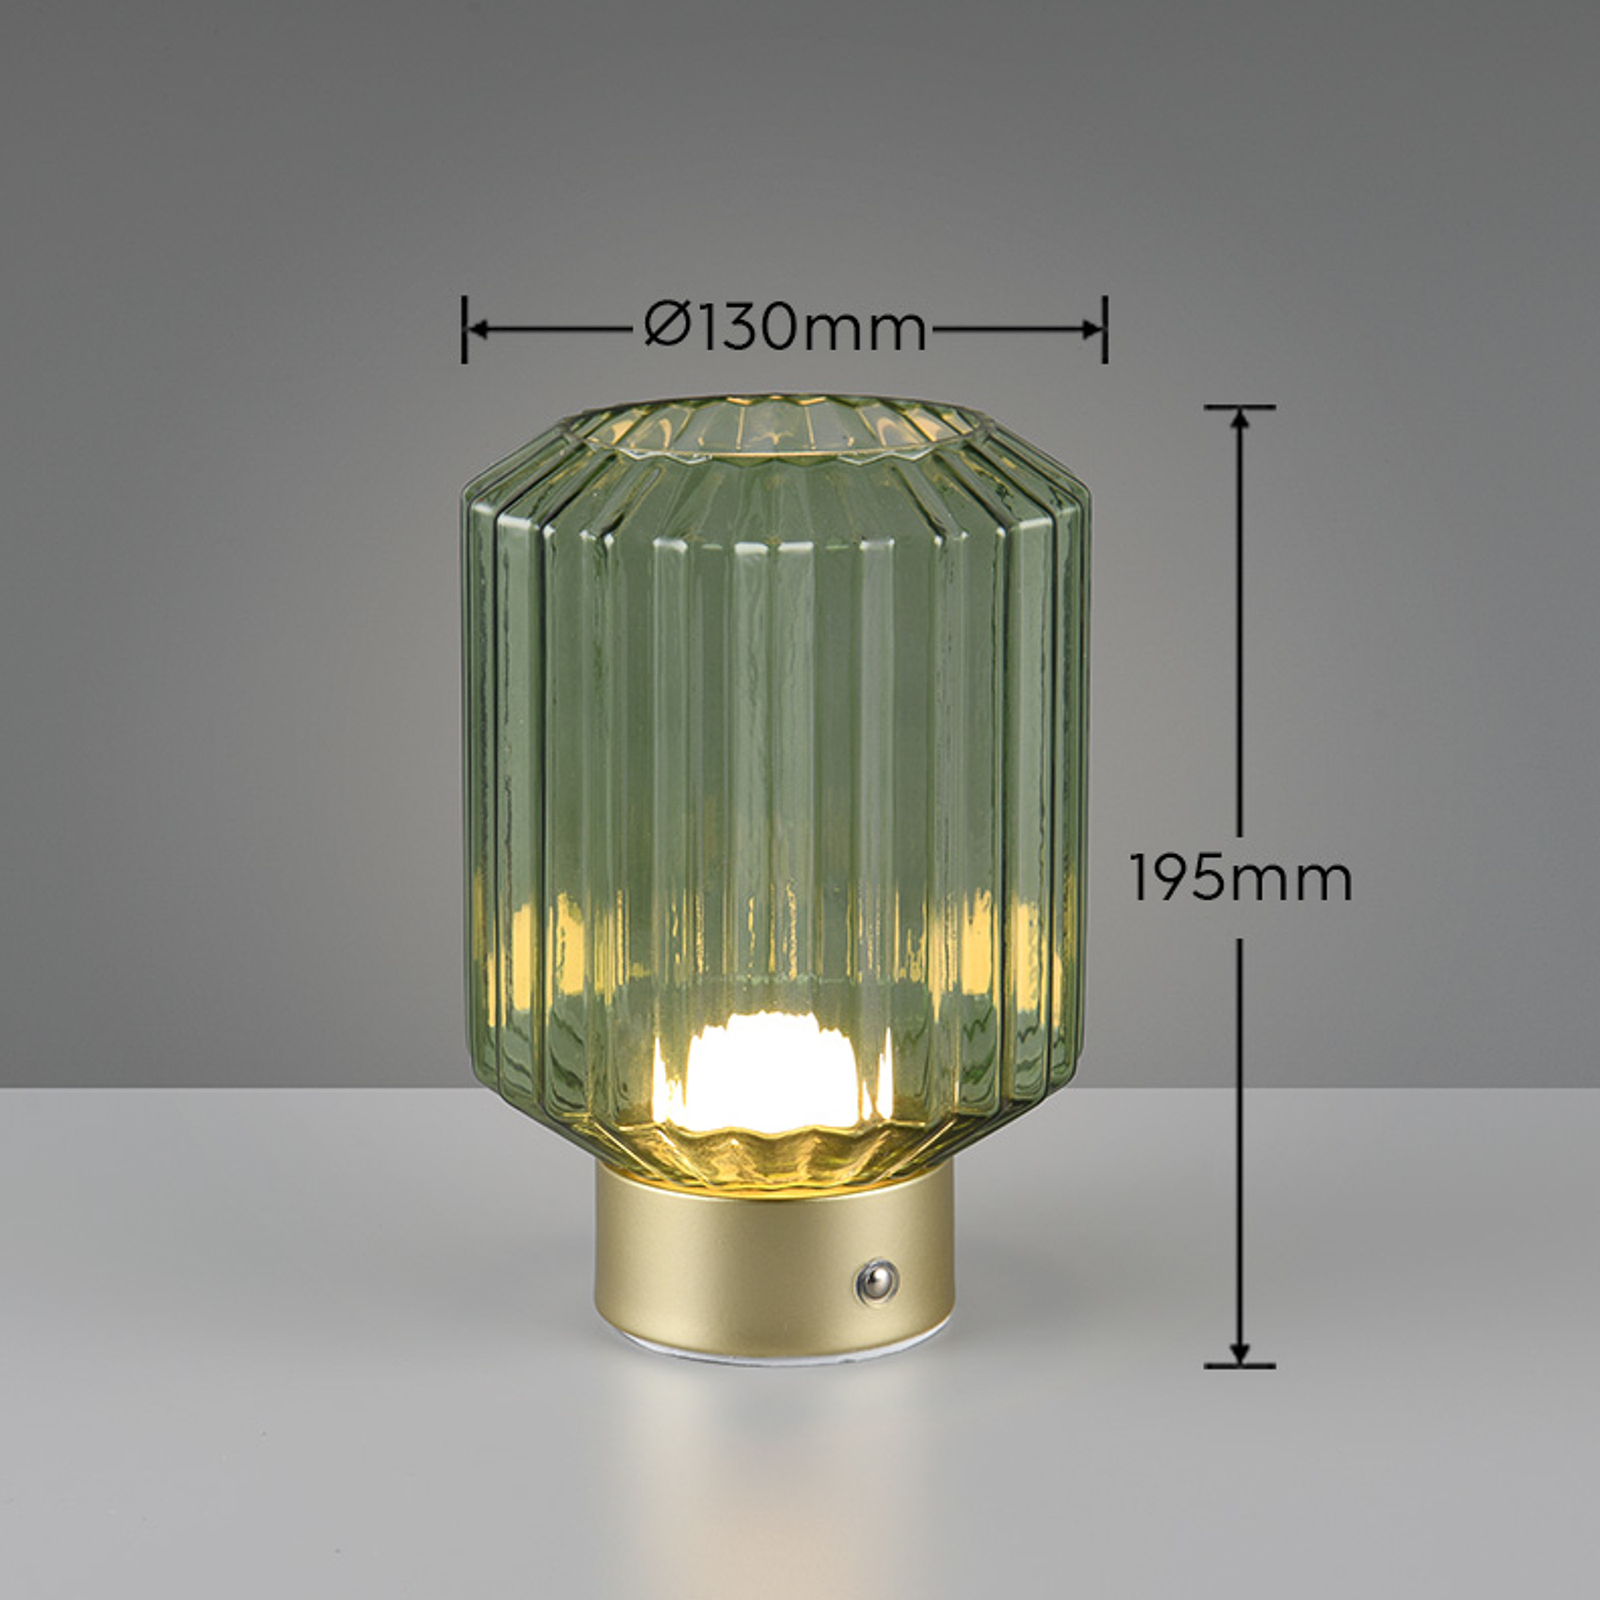 Lord LED laualamp, messing/roheline, kõrgus 19,5 cm, klaasist